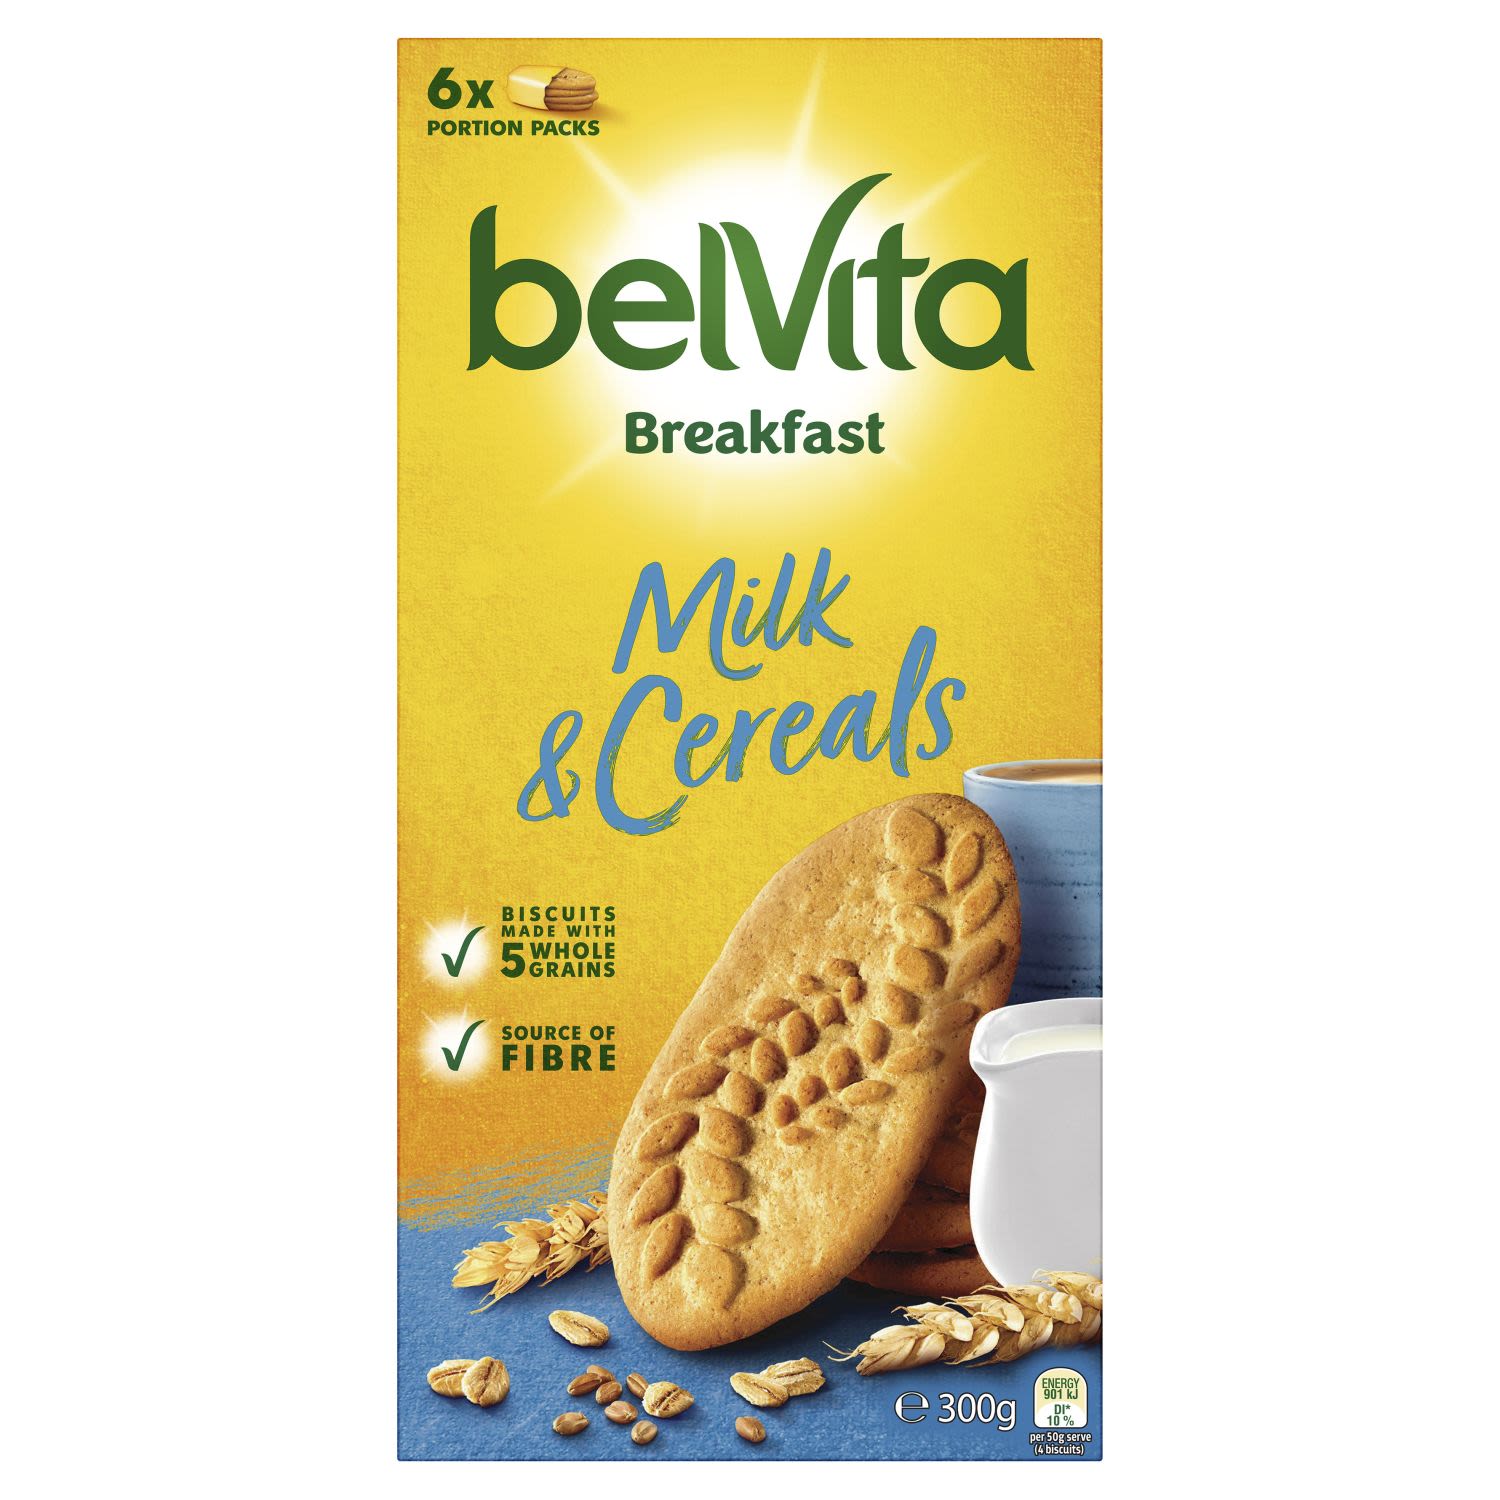 BelVita Breakfast Milk & Cereals, 6 Each